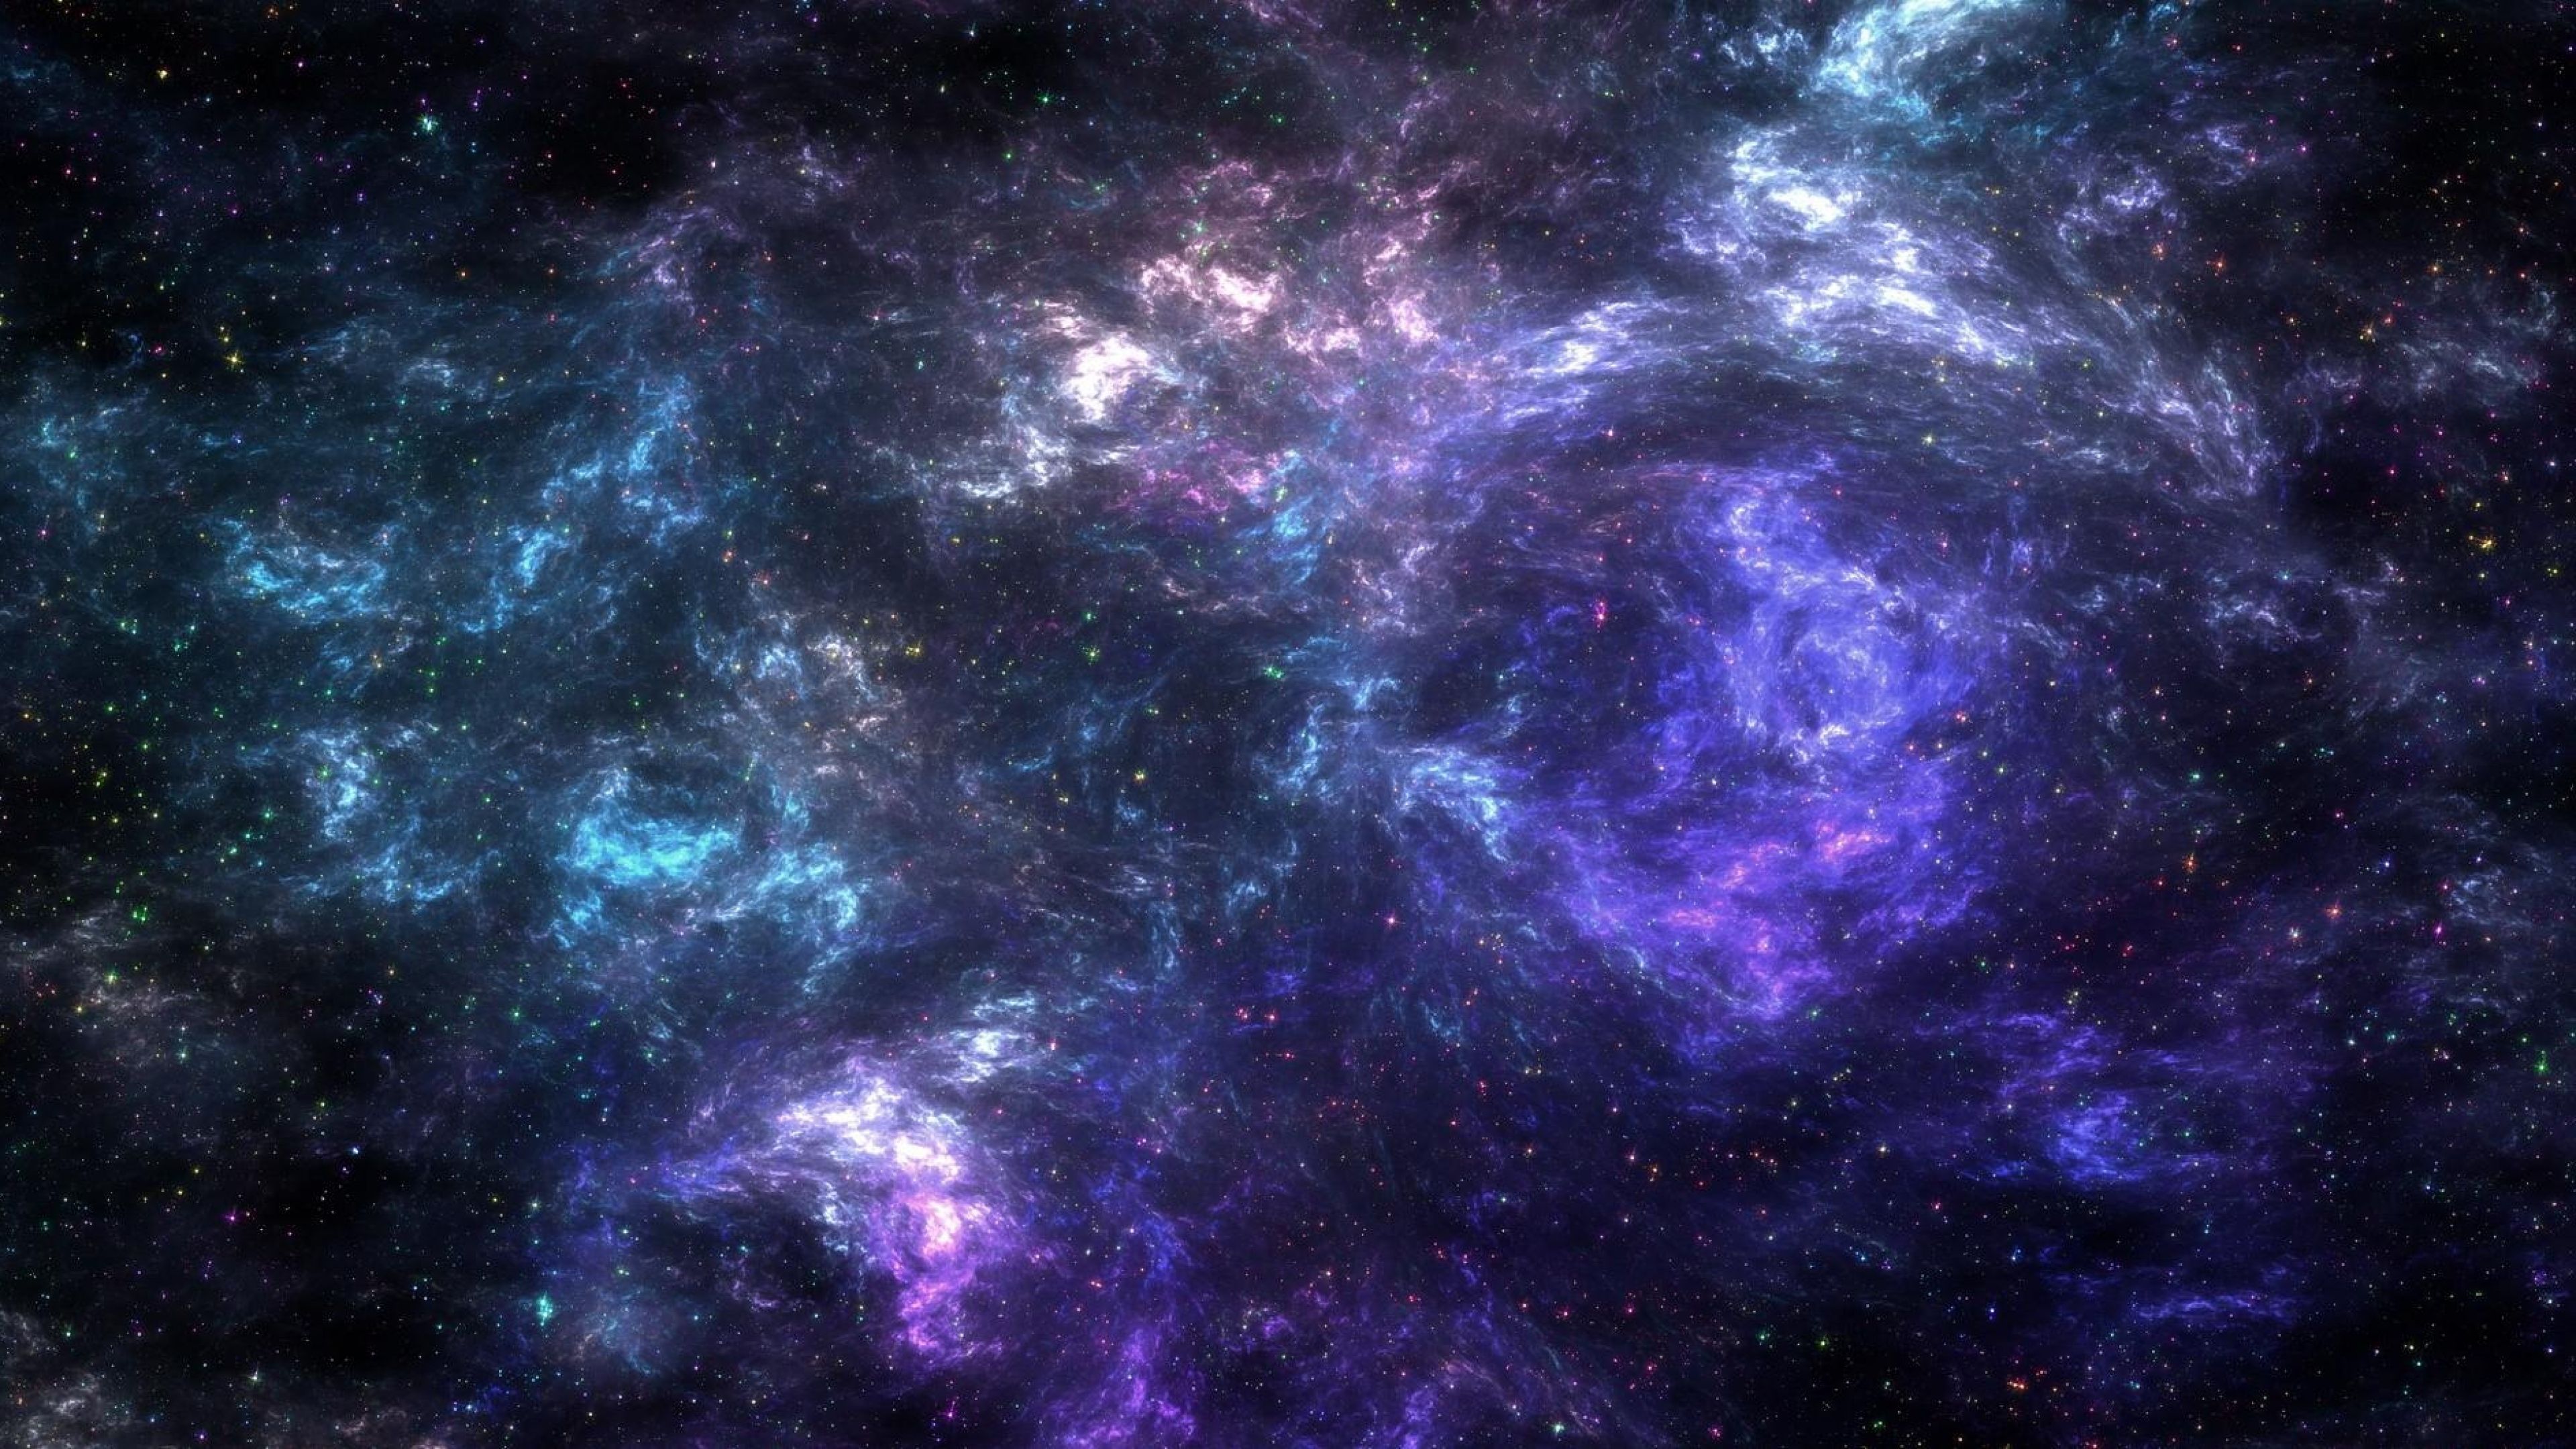 Ảnh nền galaxy 4K chính là lựa chọn hoàn hảo để trang trí cho màn hình của bạn. Với chất lượng hình ảnh sắc nét và độ phân giải cao, bạn sẽ được trải nghiệm những bầu trời sao băng, các chòm sao và các hành tinh từ xa.